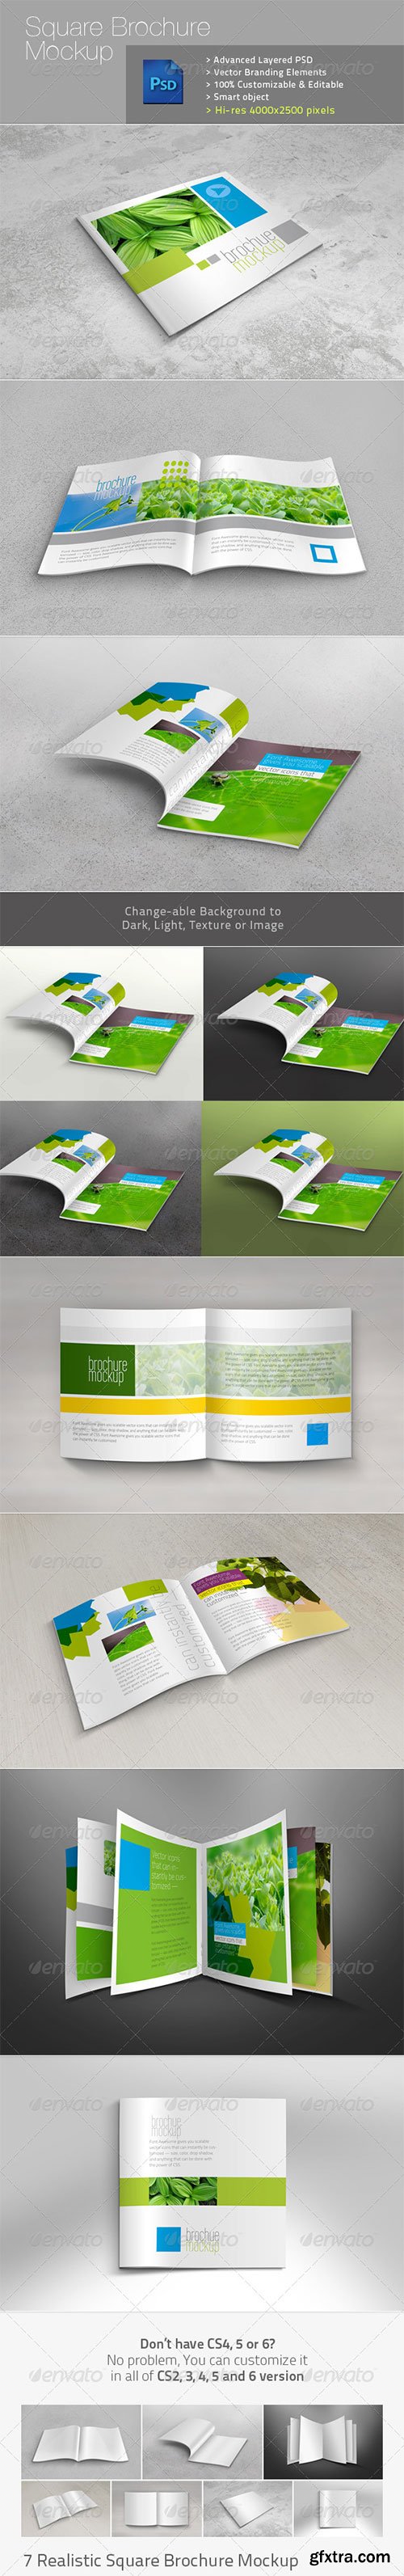 GraphicRiver - Square Brochure Realistic Mockup v1